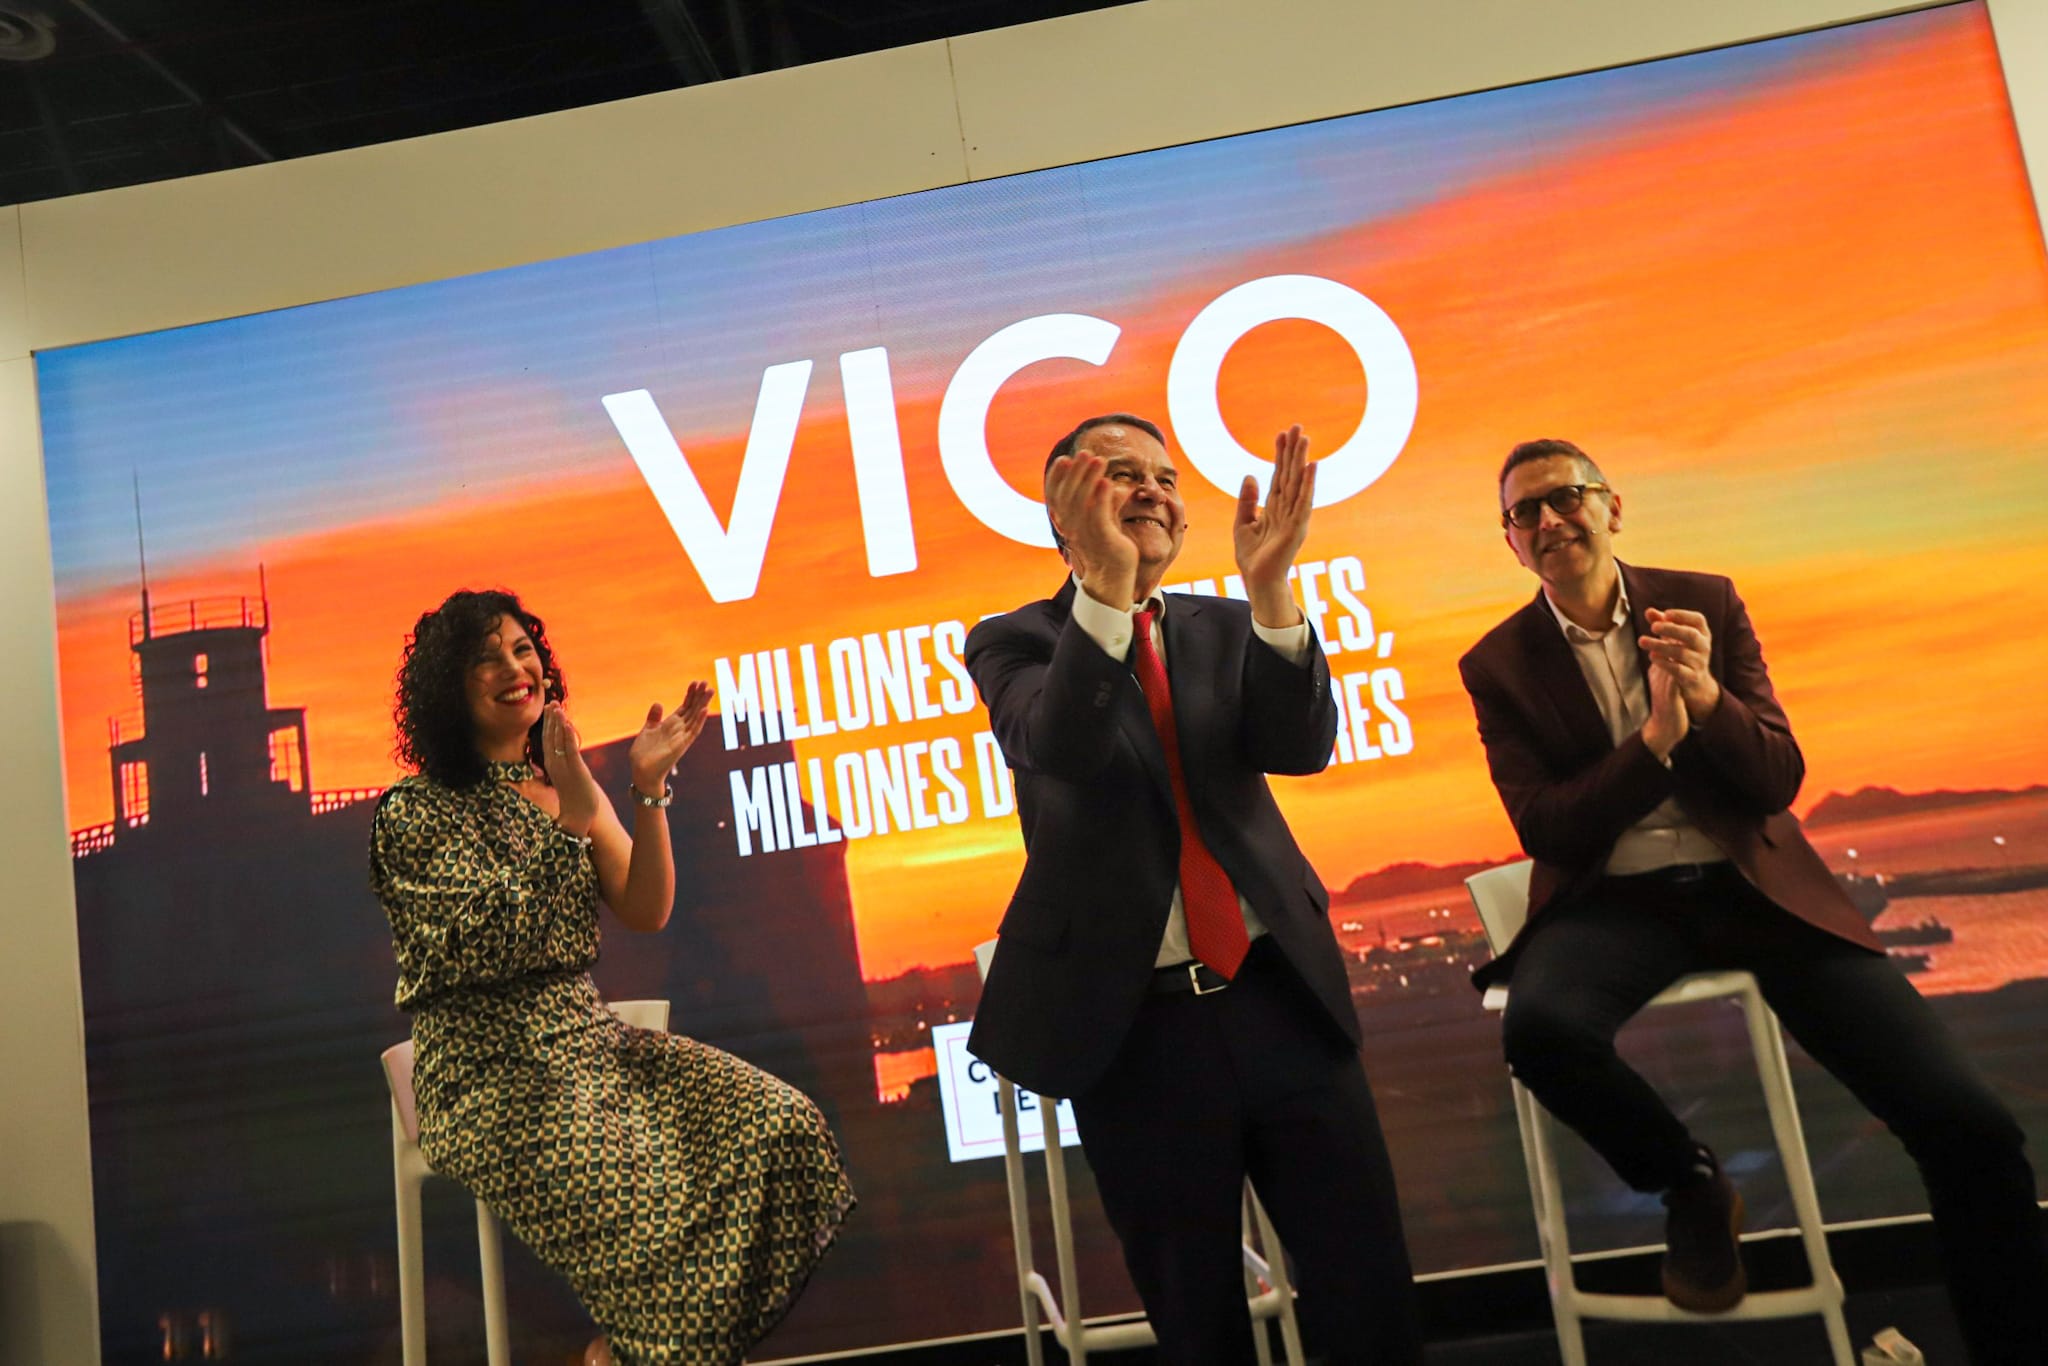 Vigo se presenta en FITUR como el destino de "millones de visitantes"